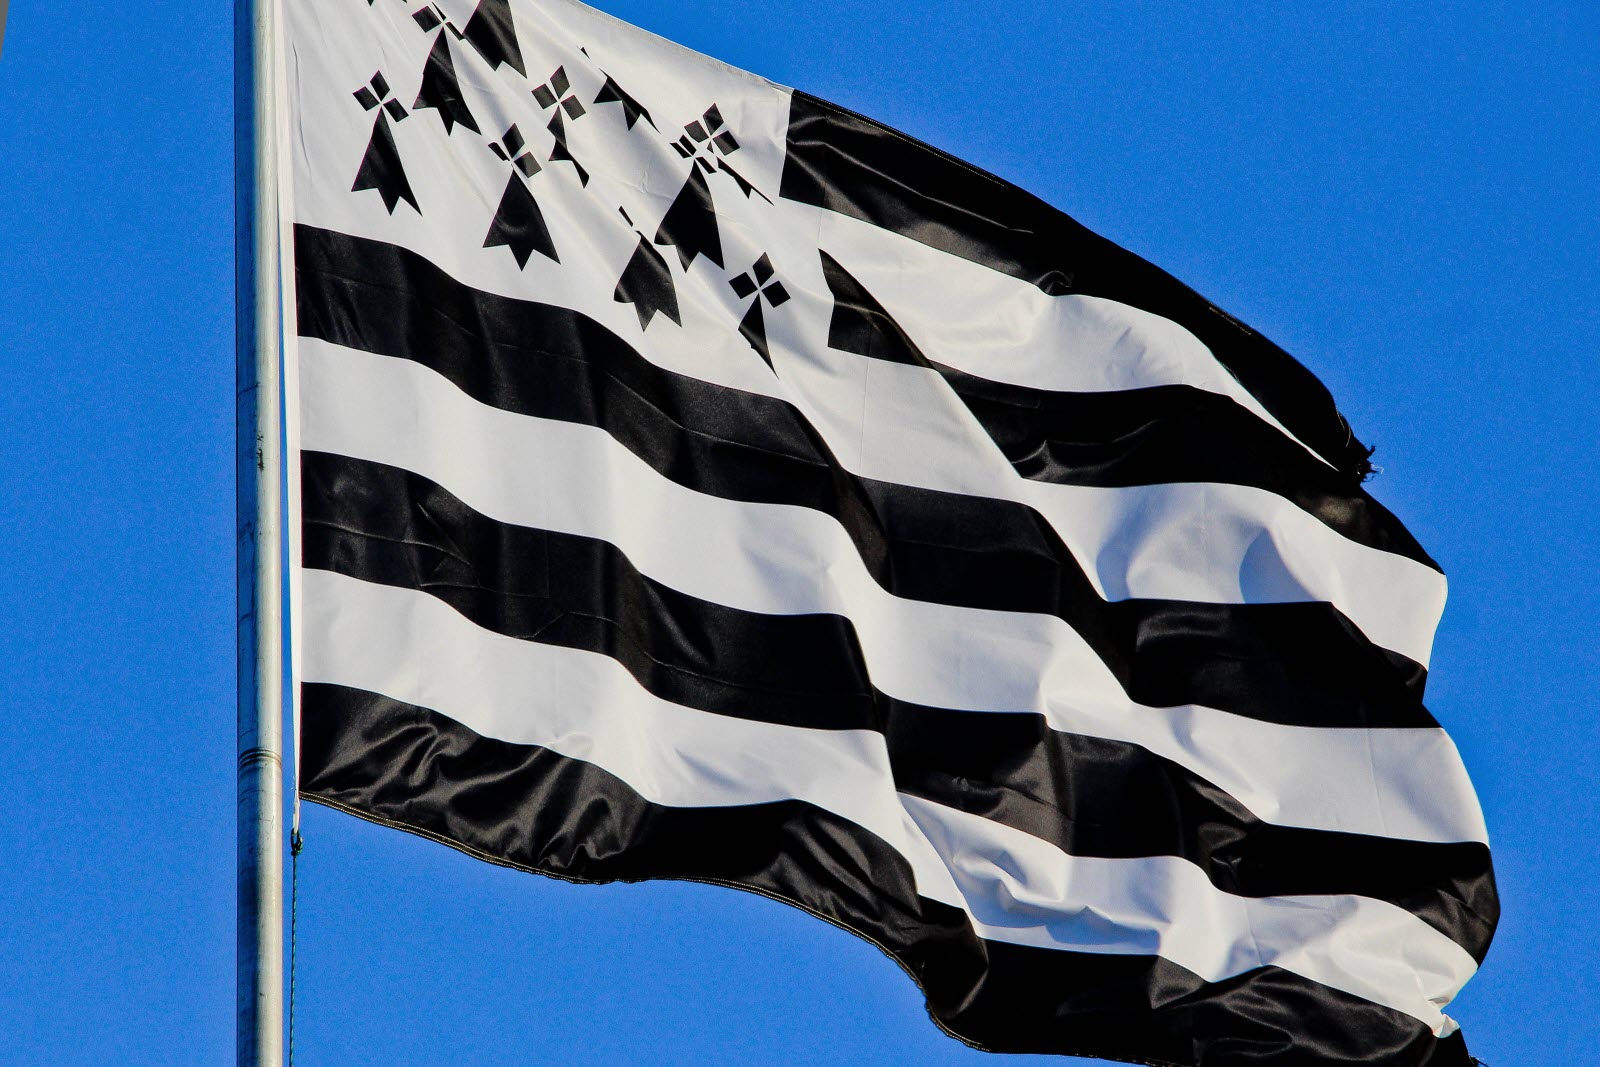 Pays nantais, pays breton ! Le PNB dénonce l’appel colonialiste des élus macronistes à interdire le drapeau breton en Loire-Atlantique